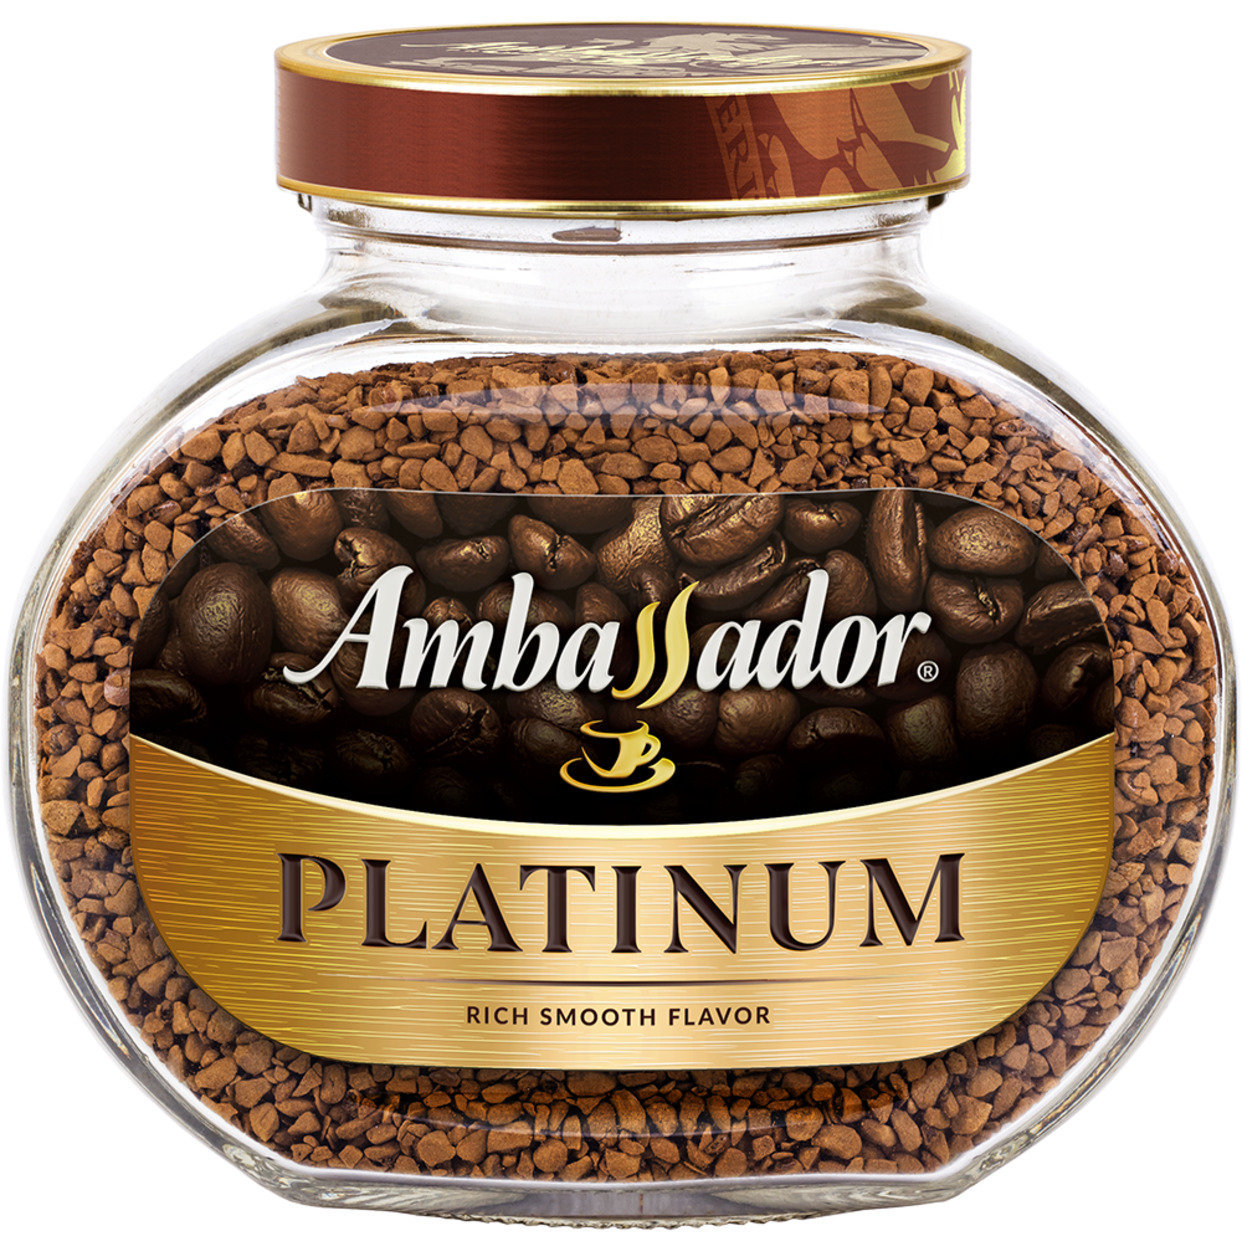 Kофе натуральный растворимый сублимированный Ambassador Platinum, ст.б., 190г по акции в Пятерочке